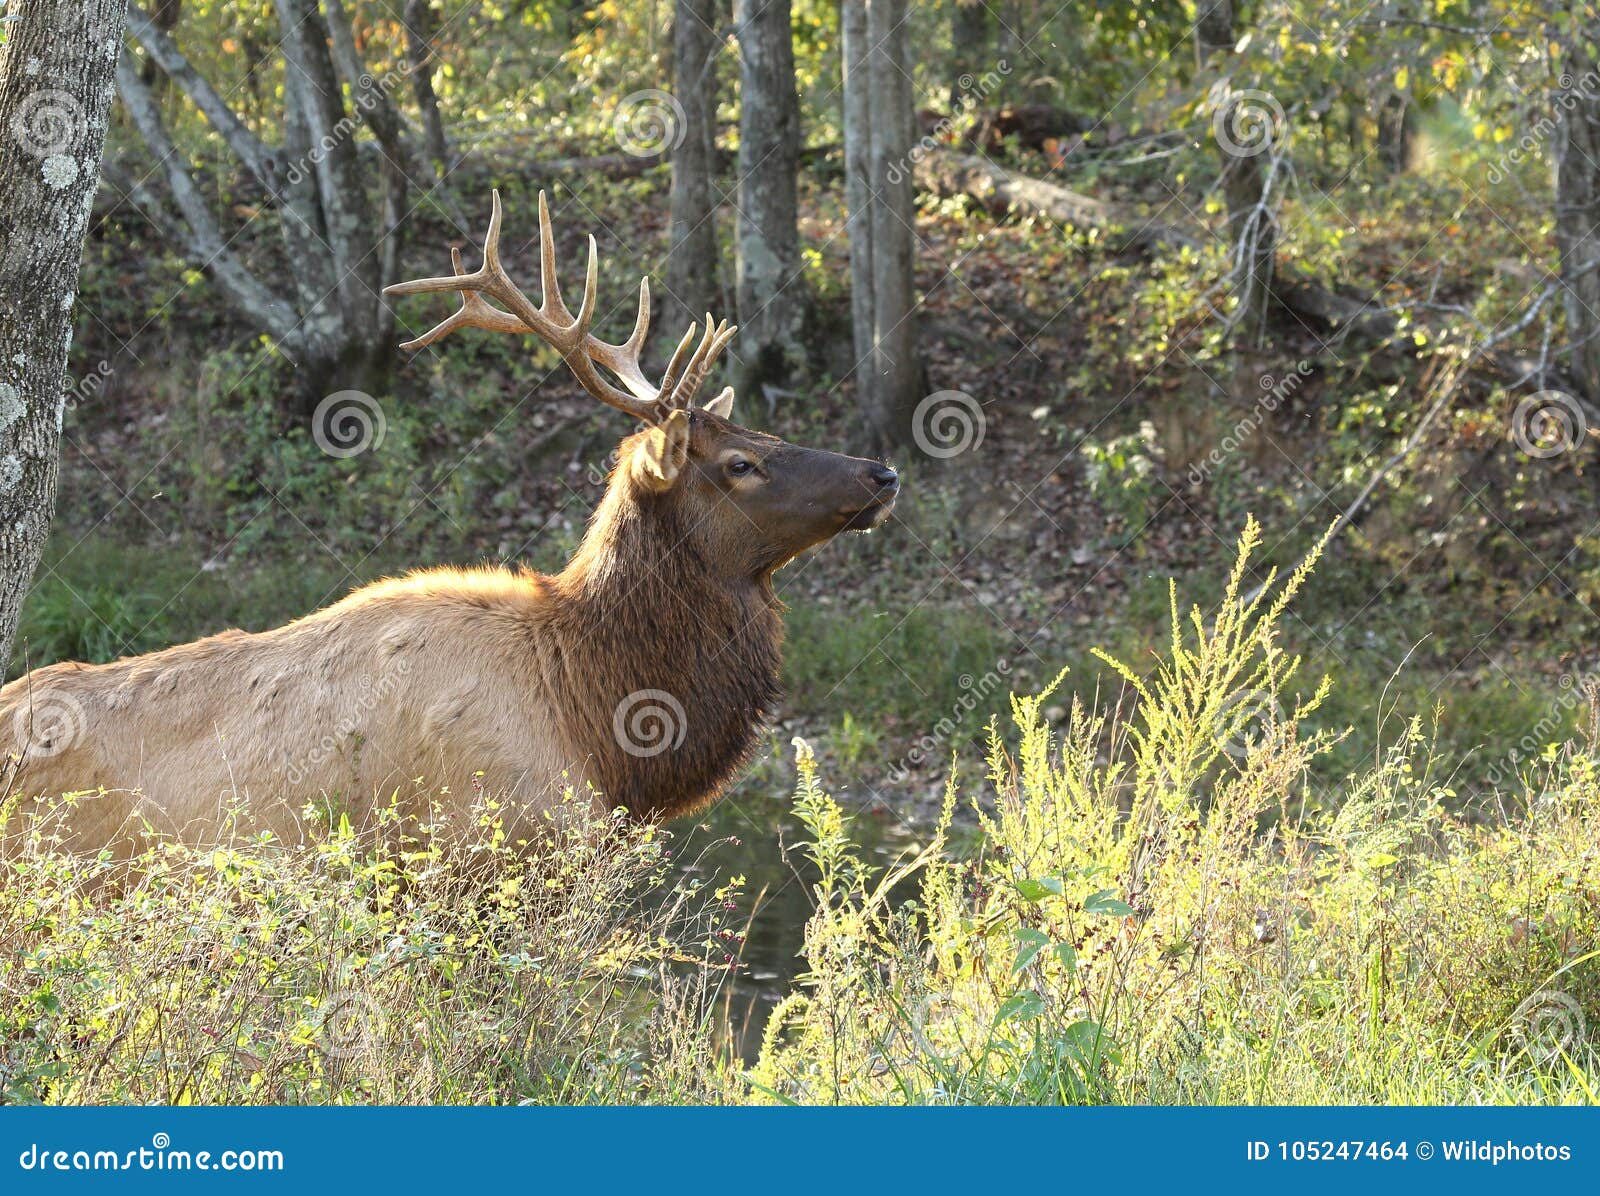 bull elk emerging from pond